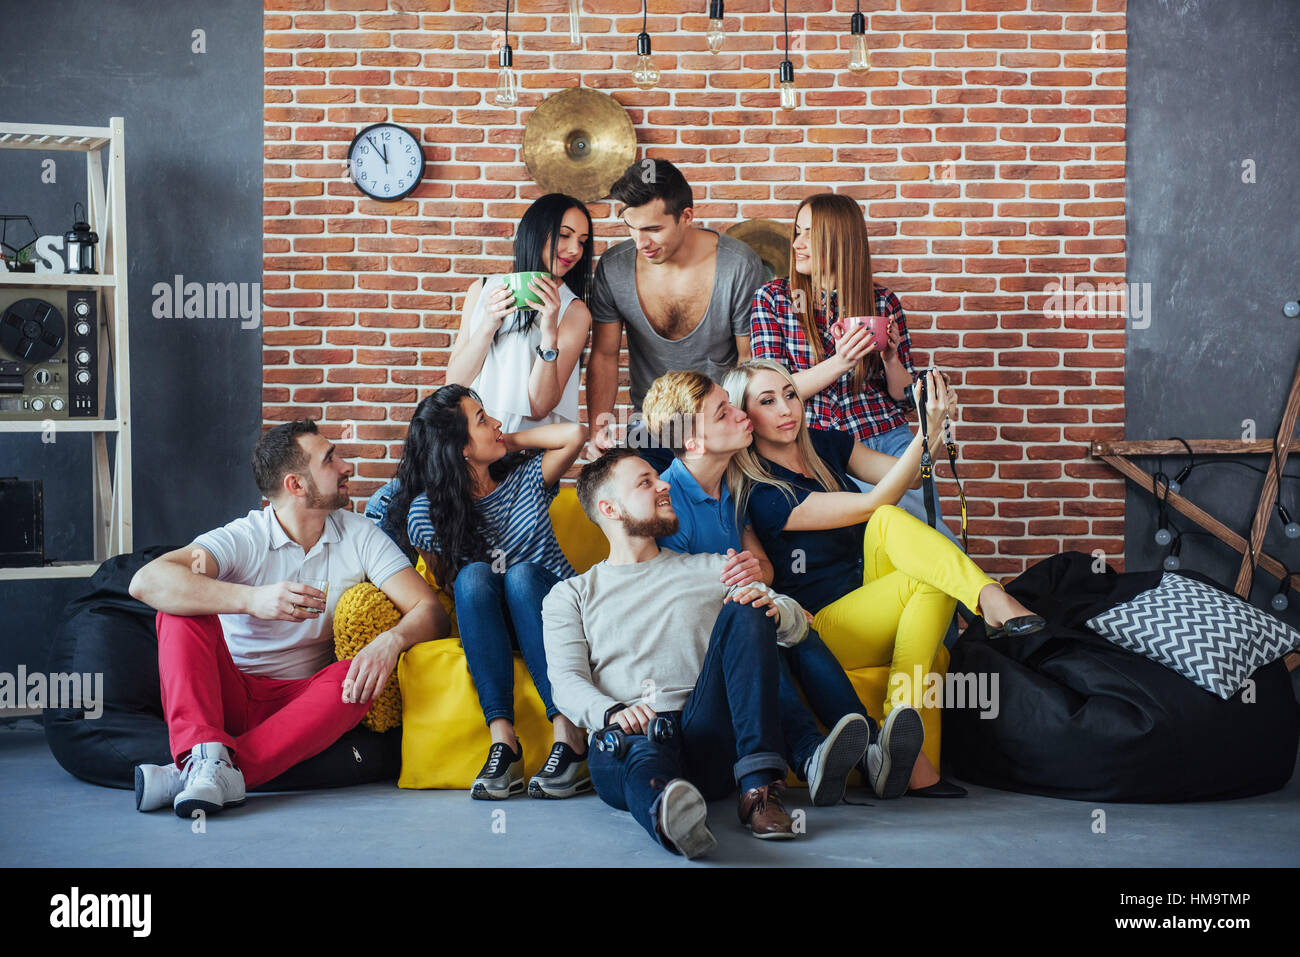 Gruppenbild der multi-ethnischen jungen und Mädchen mit bunten modische  Kleidung hält Freundin posiert auf eine Mauer, Urban-Style-Leute, die Spaß,  Konzepte über Jugend Zweisamkeit Lebensstil Stockfotografie - Alamy